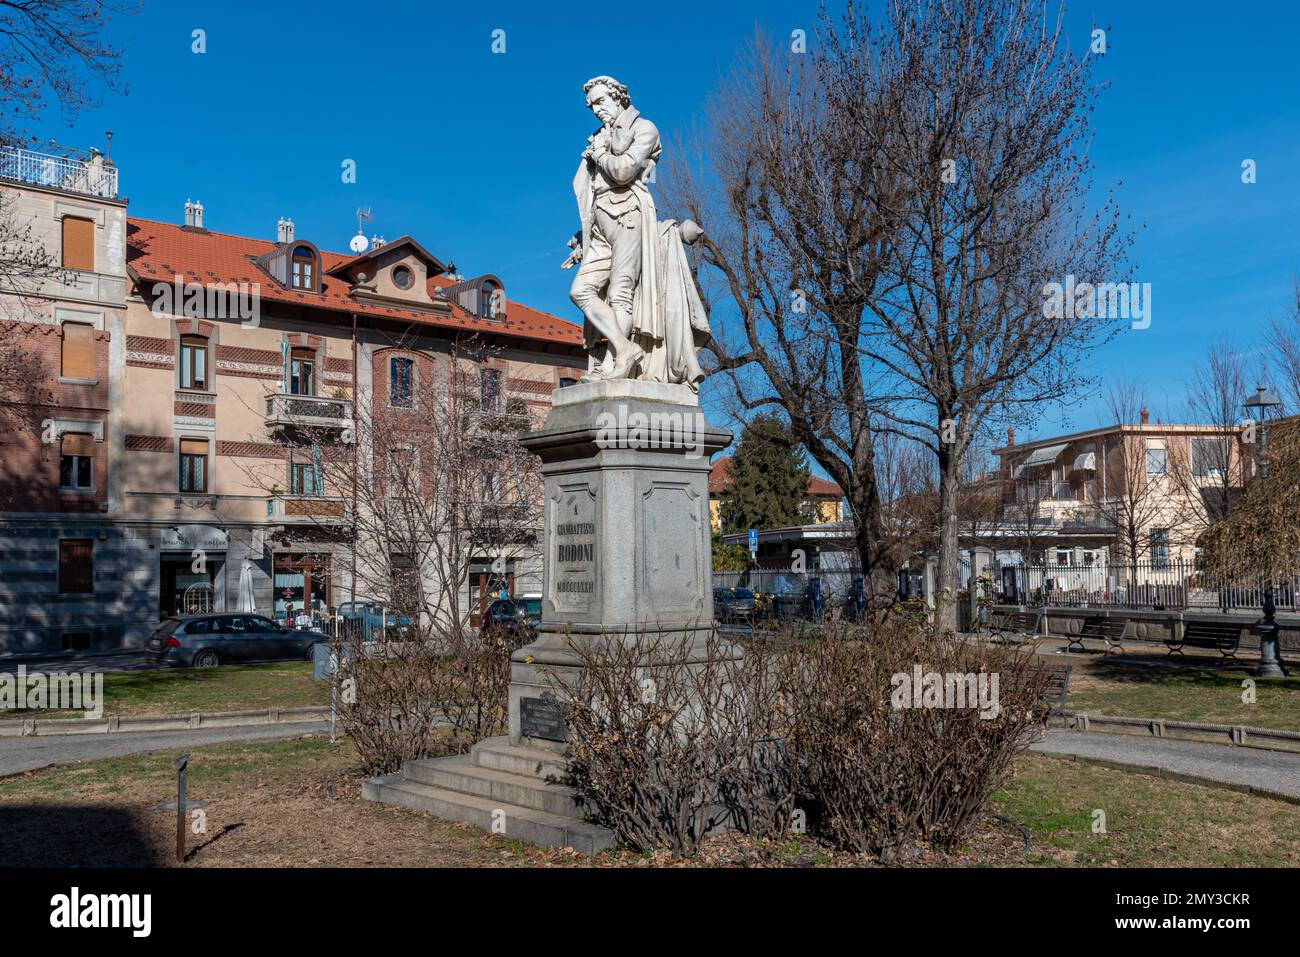 Saluzzo, Italy - February 03, 2023: Monument with statue of Giambattista Bodoni born in Saluzzo in 1740 known typographer creator of the famous Bodoni Stock Photo